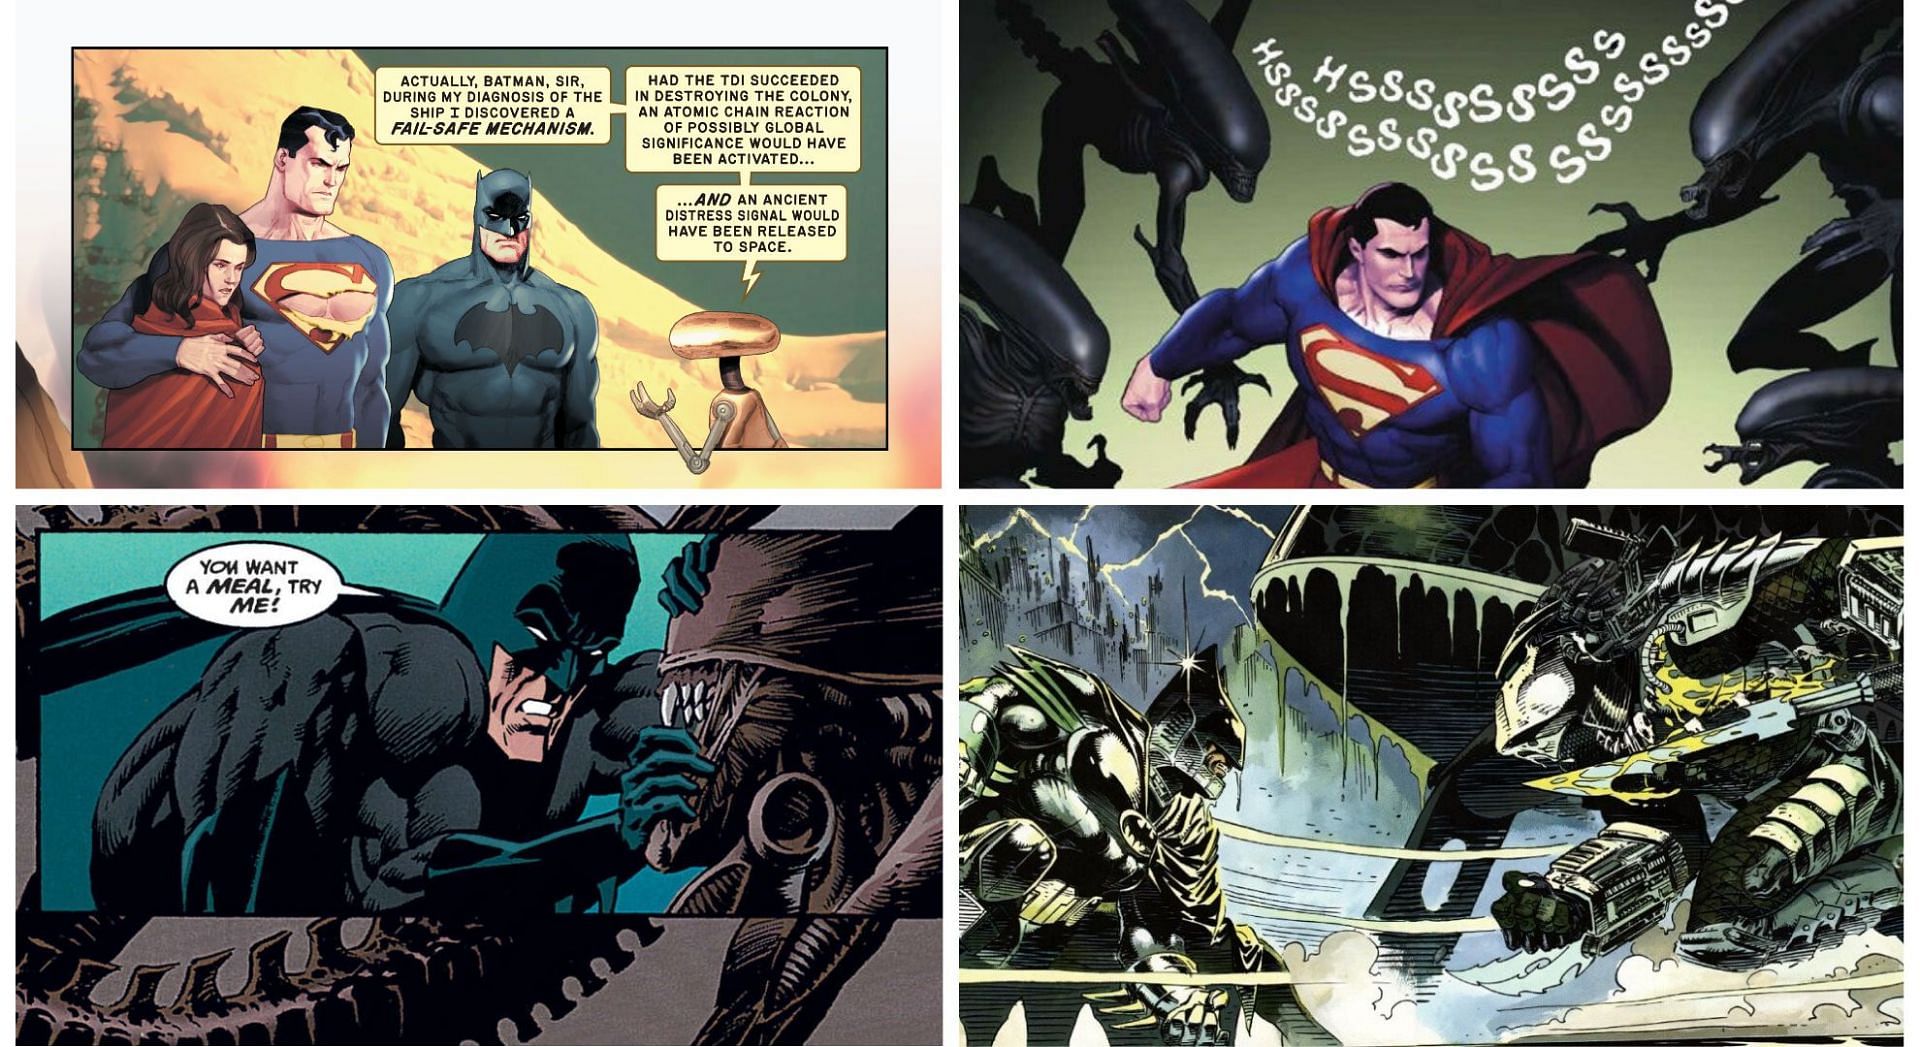 Batman and Superman vs. Alien vs. Predator (Image via Sportskeeda)